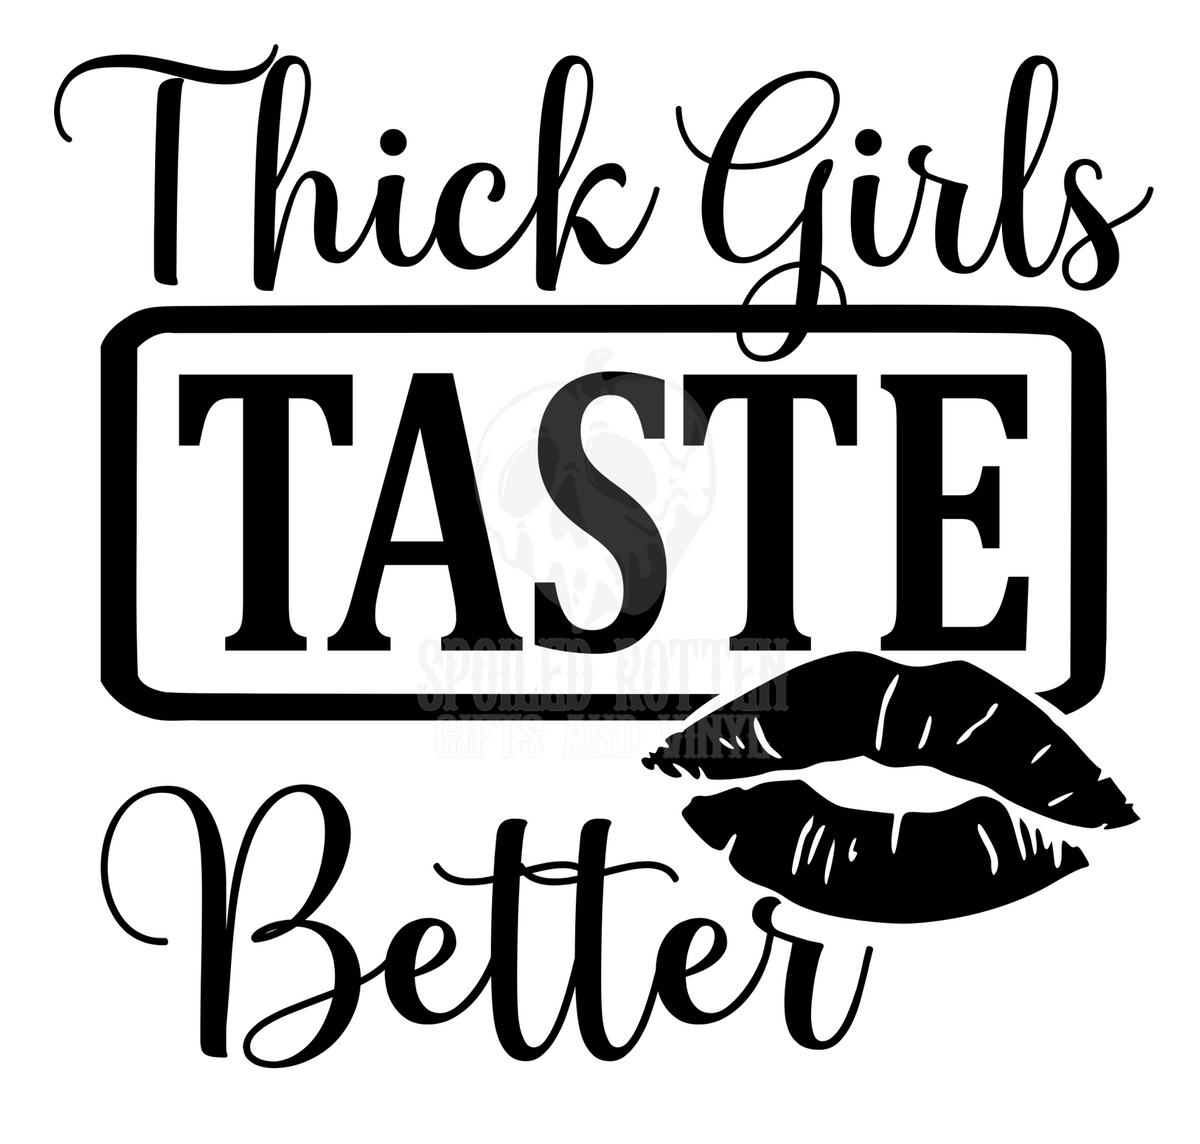 Thick Girls Taste Better Vinyl Decal